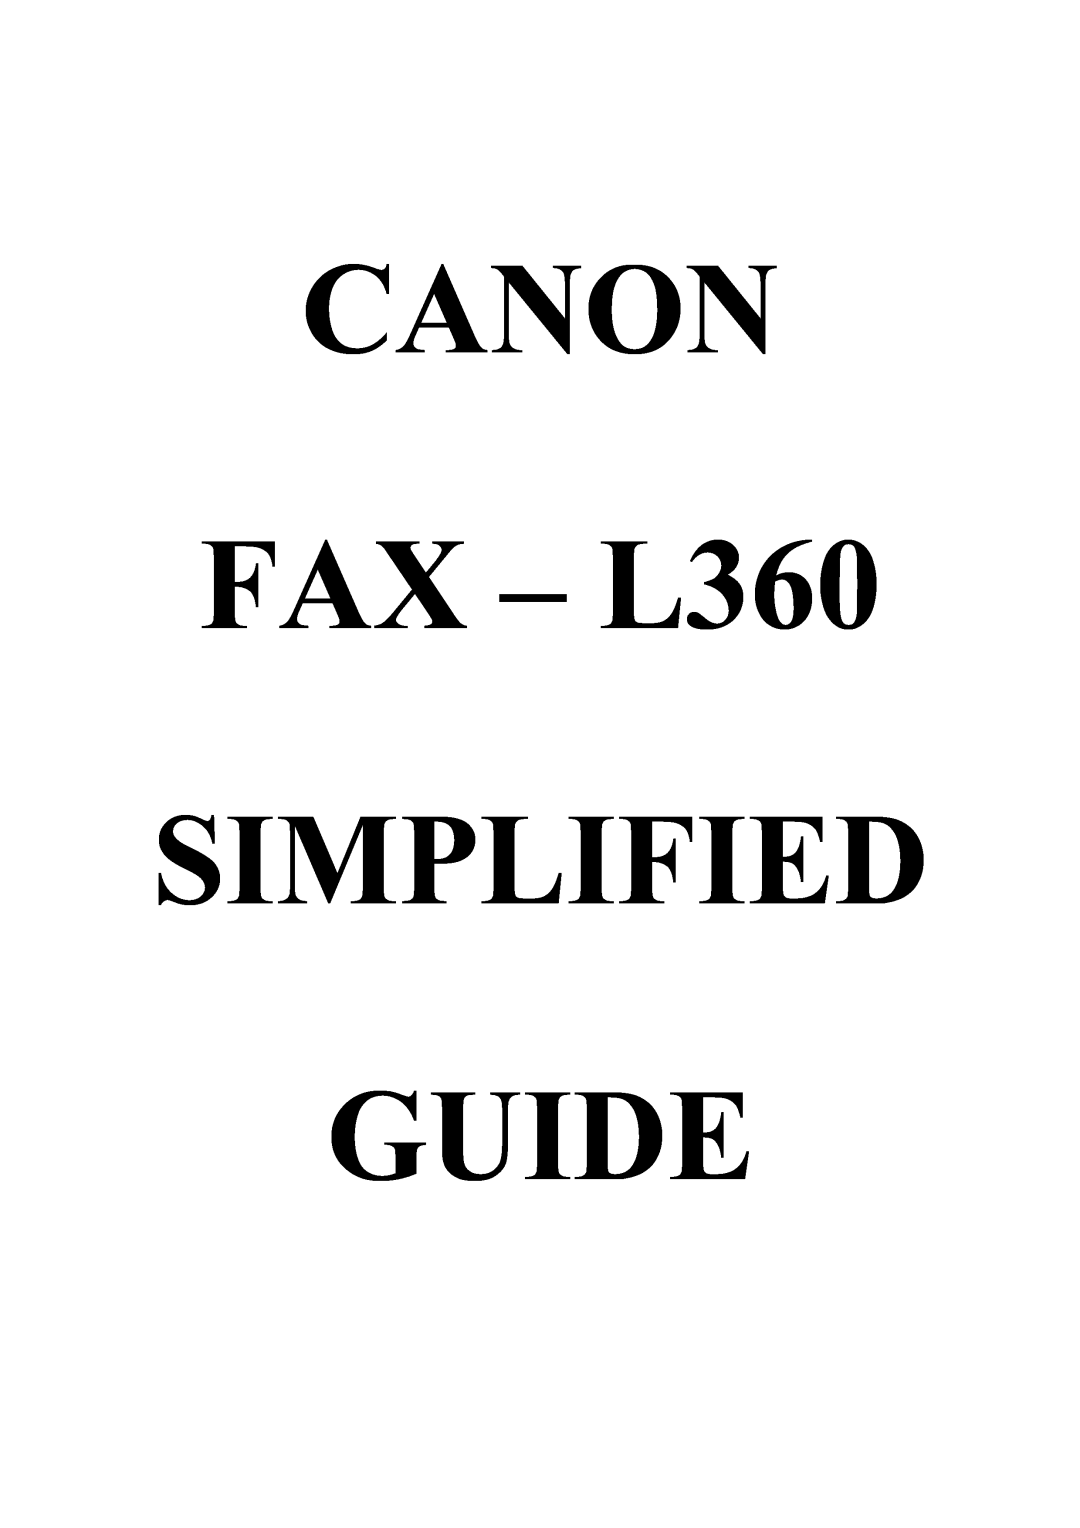 Canon manual CANON FAX - L360 SIMPLIFIED GUIDE 